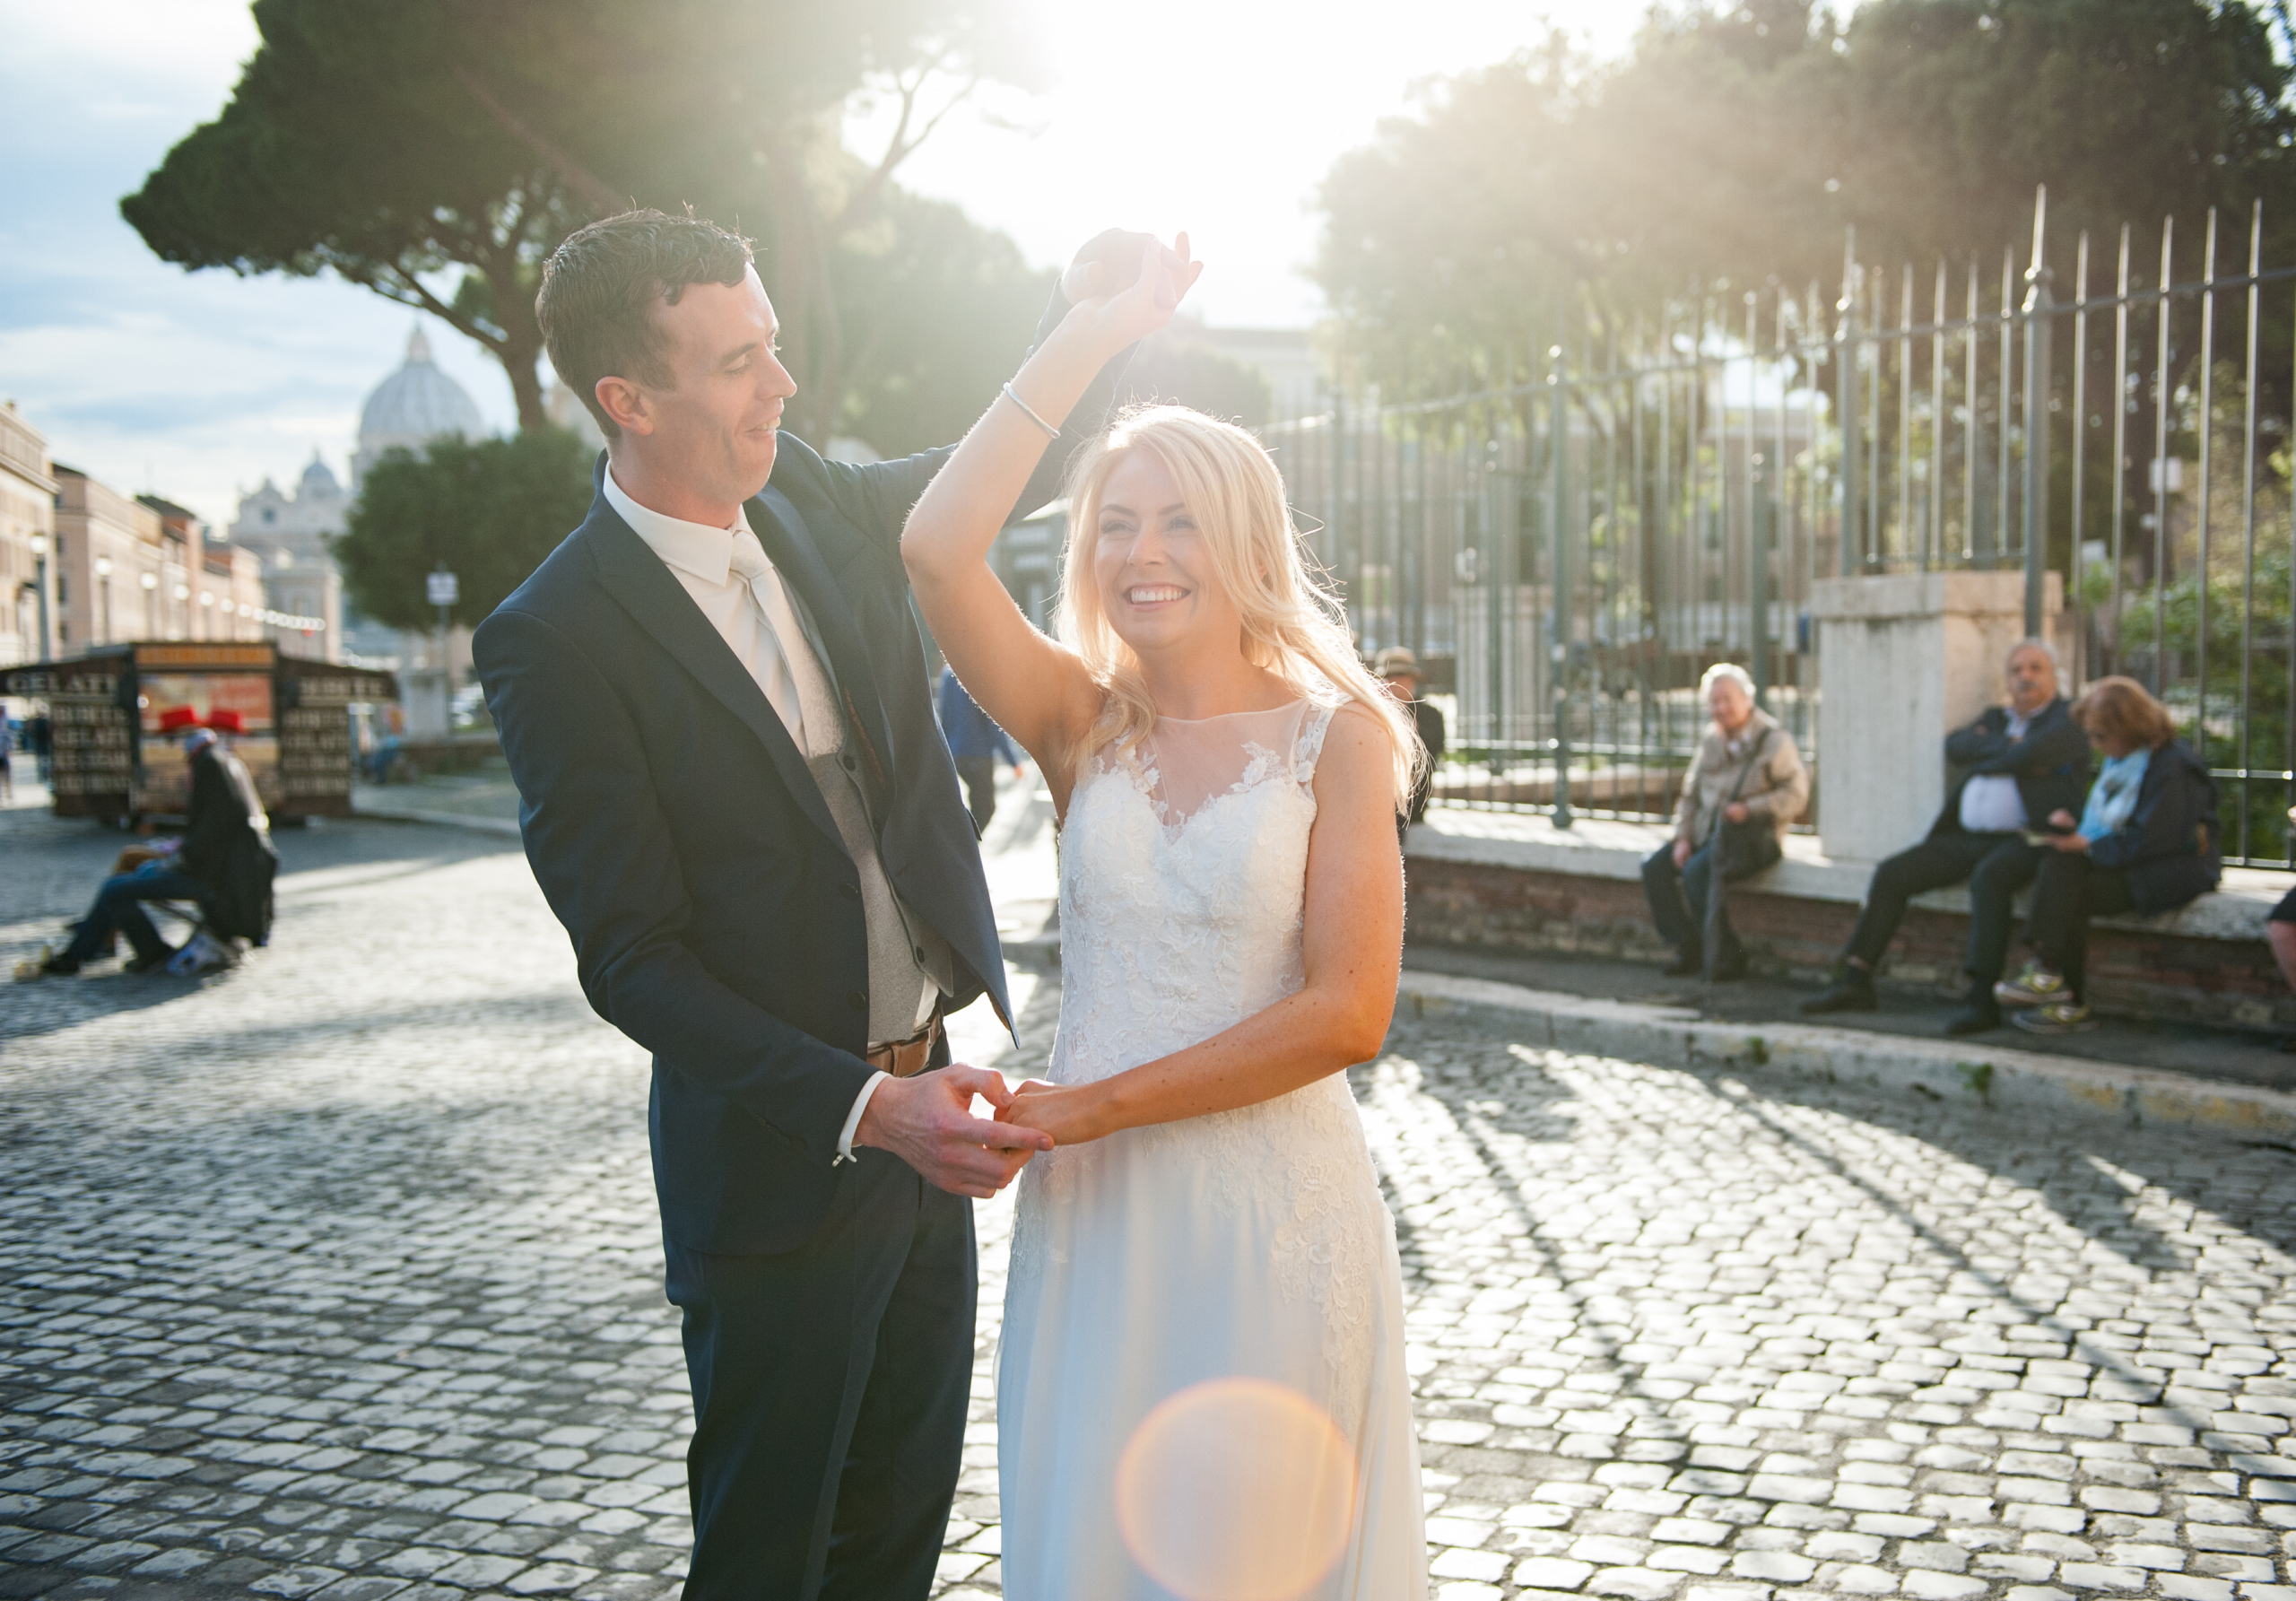 elopment wedding, luxurywedding, wedding in rome, studio25Roma, wedding,